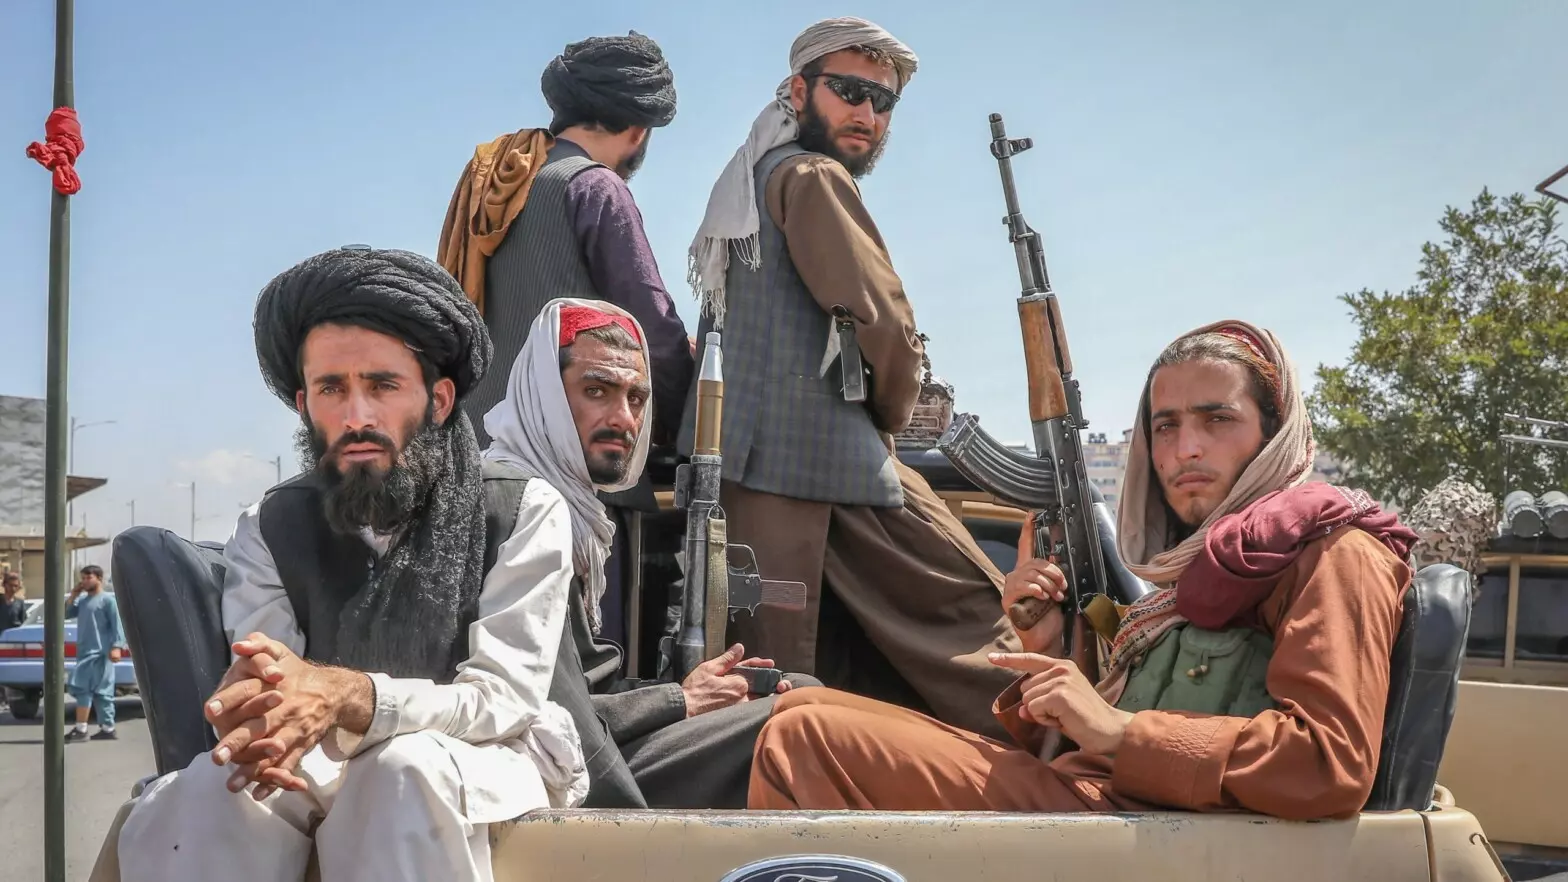 Afganistán: Talibanes abren fuego en una boda por reproducir música y matan 2 invitados